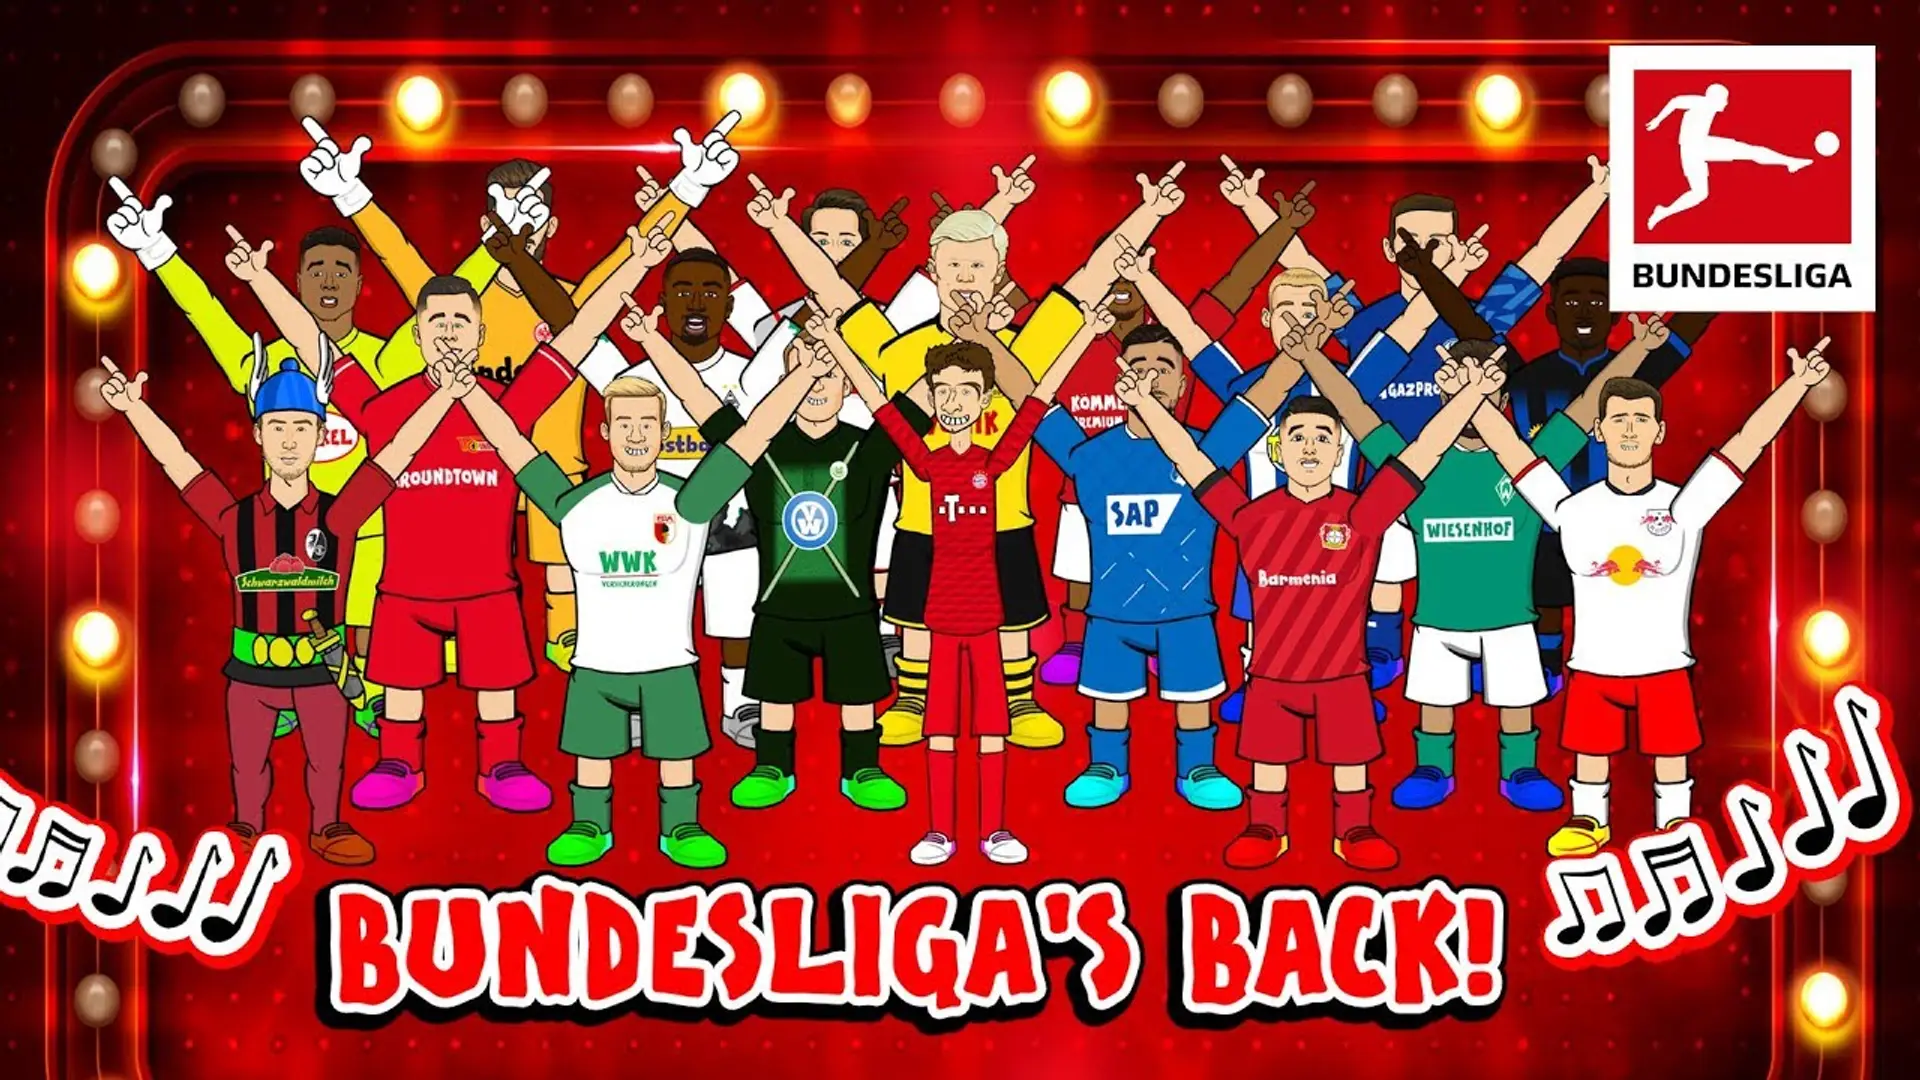 Finde dich in der deutschen Fußballwelt wieder: Die Bundesliga als Serie, die du ab der Mitte guckst